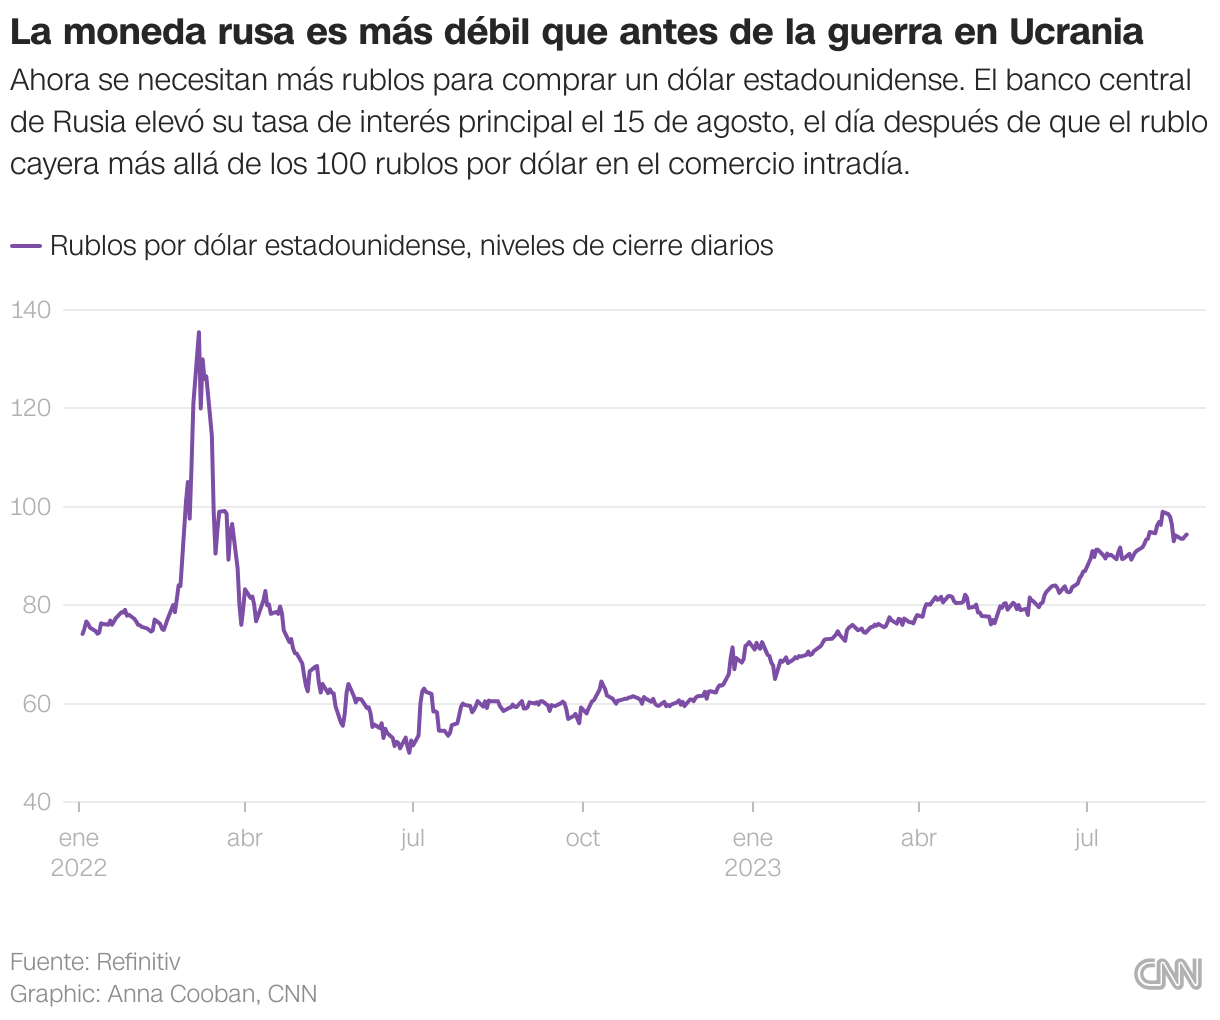 Un gráfico que muestra que el valor del rublo ruso se desplomó frente al dólar estadounidense en marzo de 2022 después de la invasión a gran escala de Ucrania por parte de Moscú, y se debilitó constantemente a lo largo de 2023.